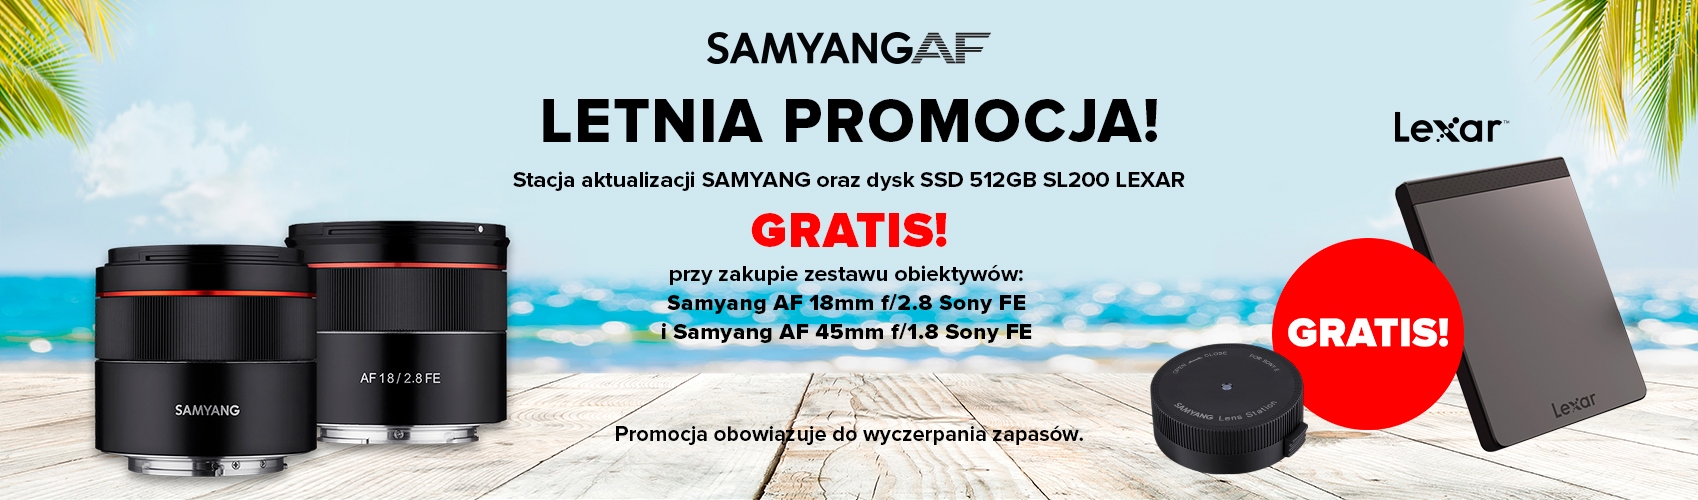 Skorzystj z letniej promocji i odbierz przy zakupie zestawu obiektywów Samyang stację do aktualizacji i dysk lexar 512Gb gratis!